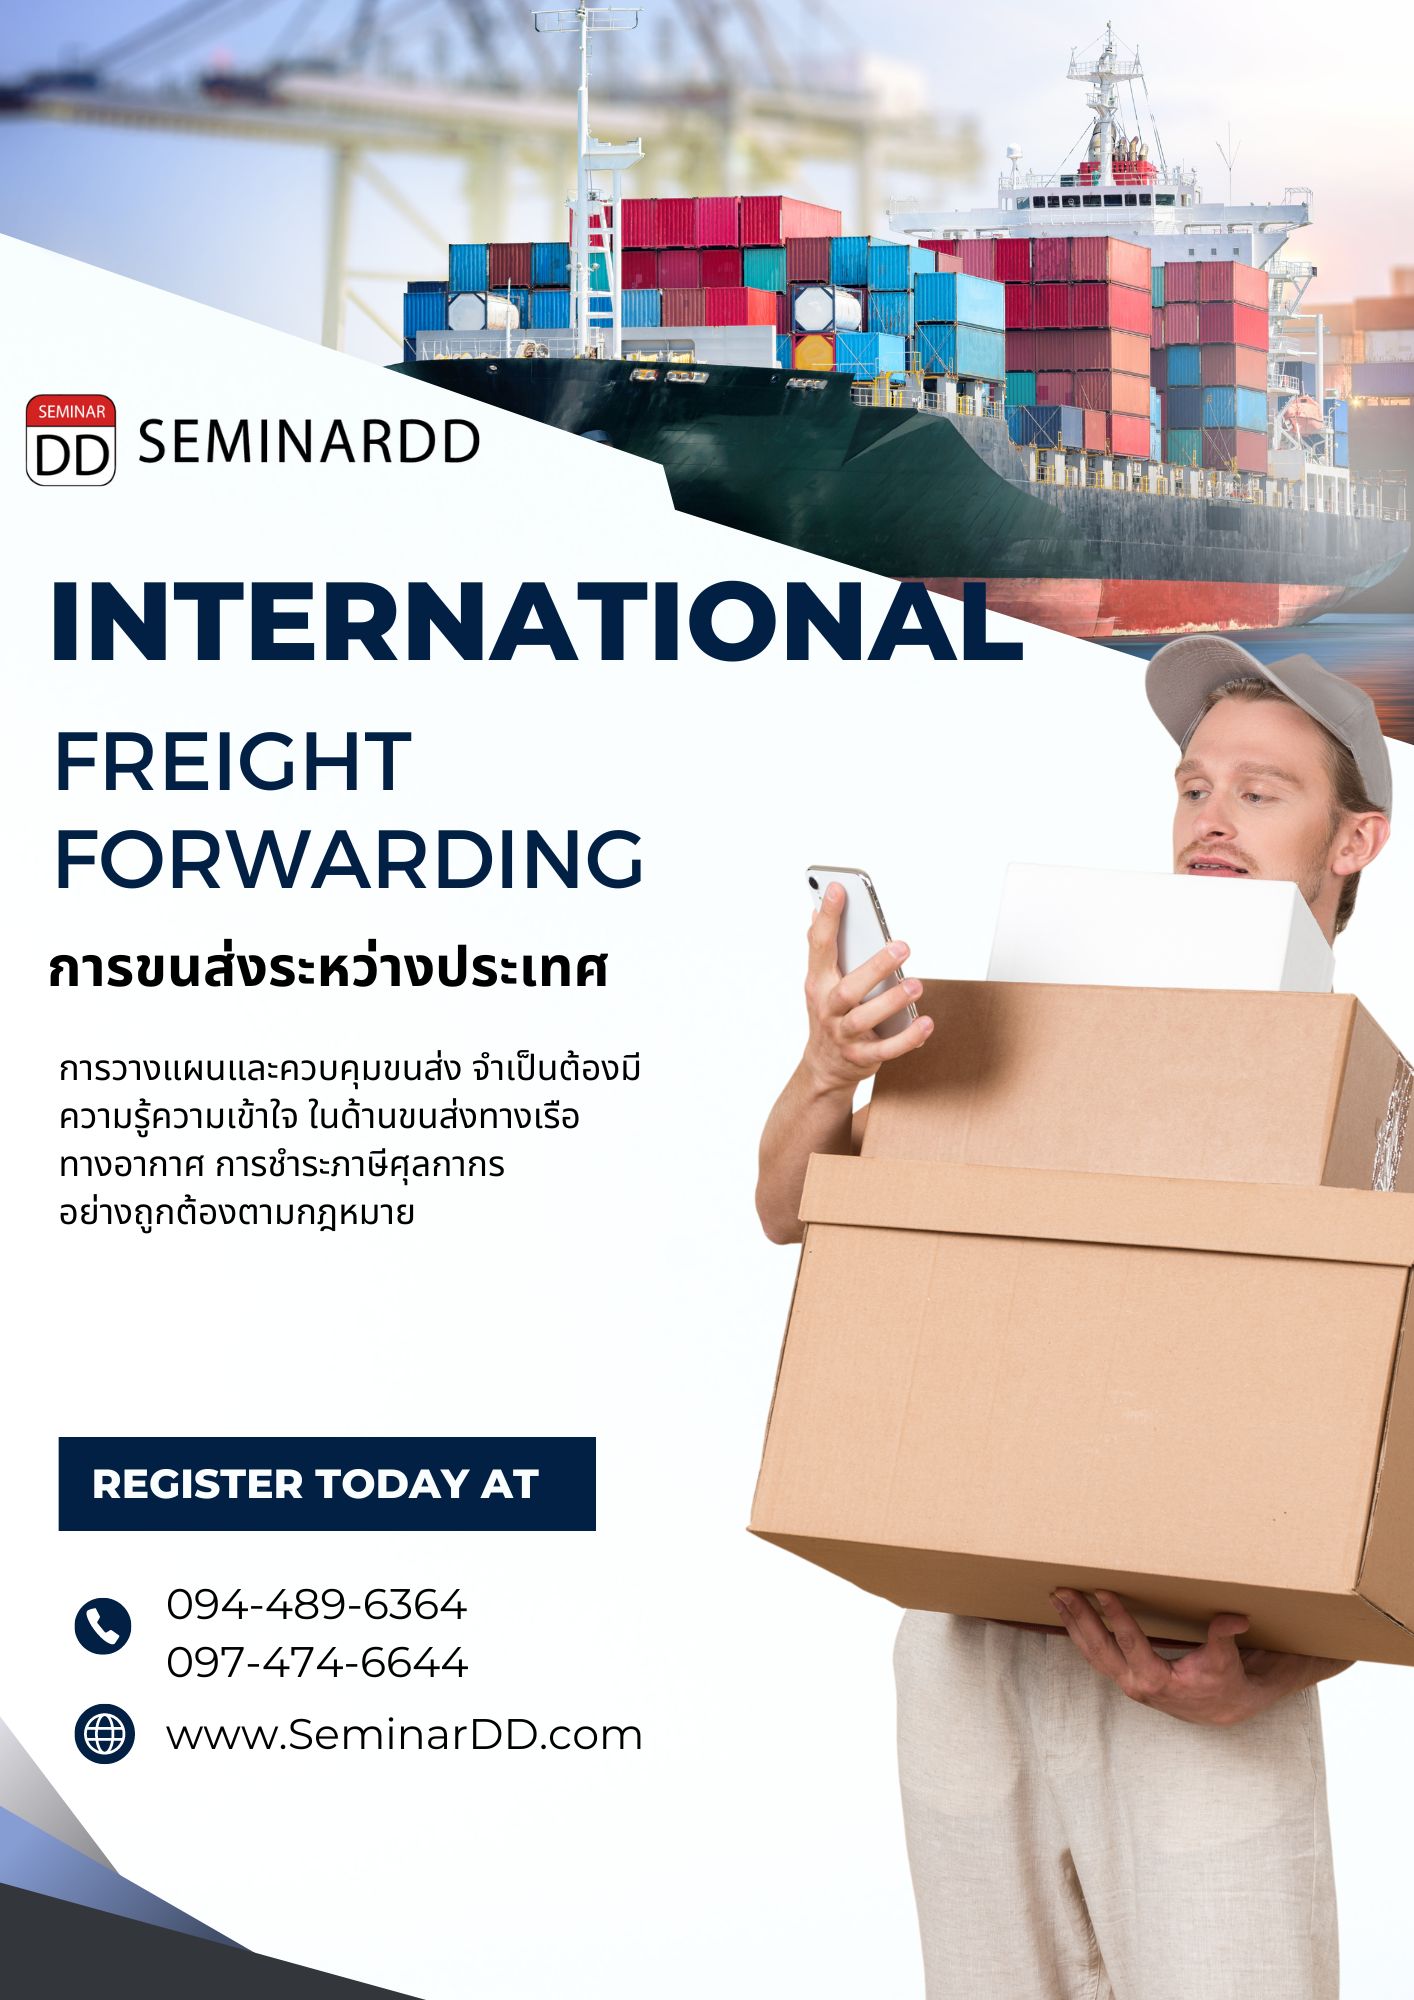 หลักสูตร หลักสูตรอบรม : การขนส่งระหว่างประเทศ  ( International Freight Forwarding )